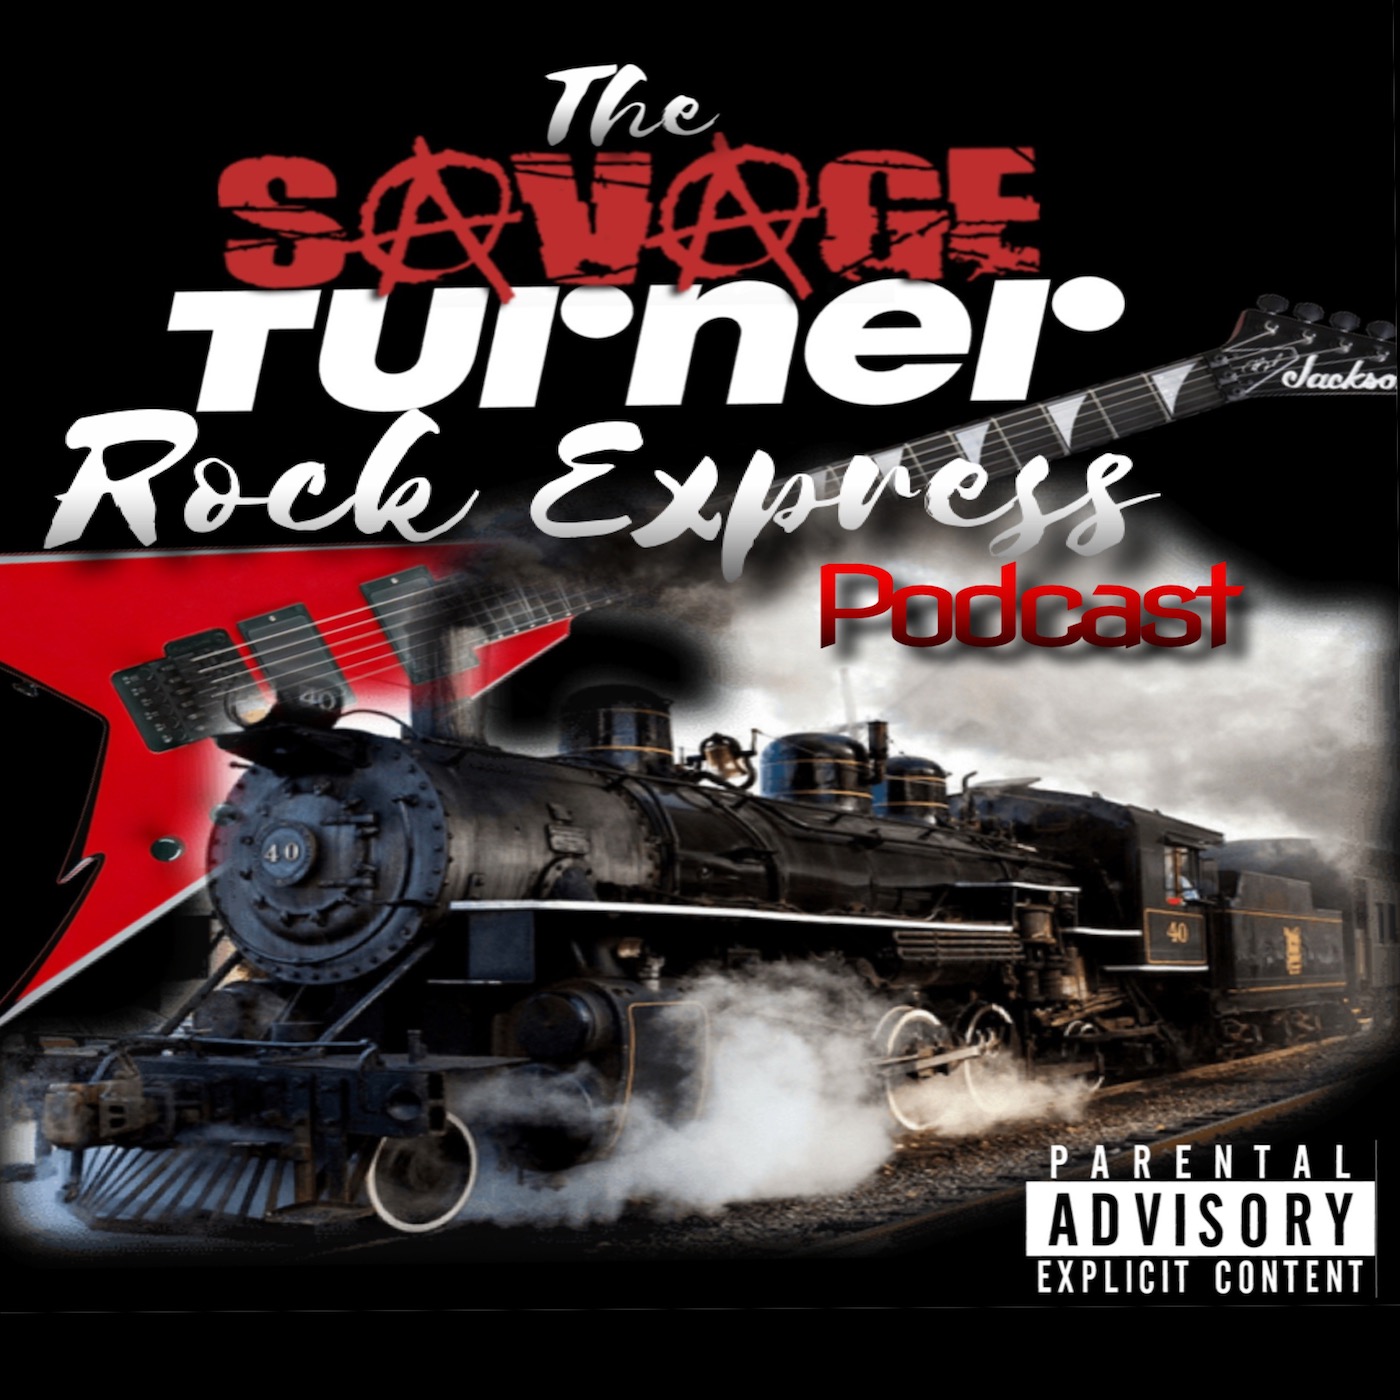 The Savage Turner Rock Express